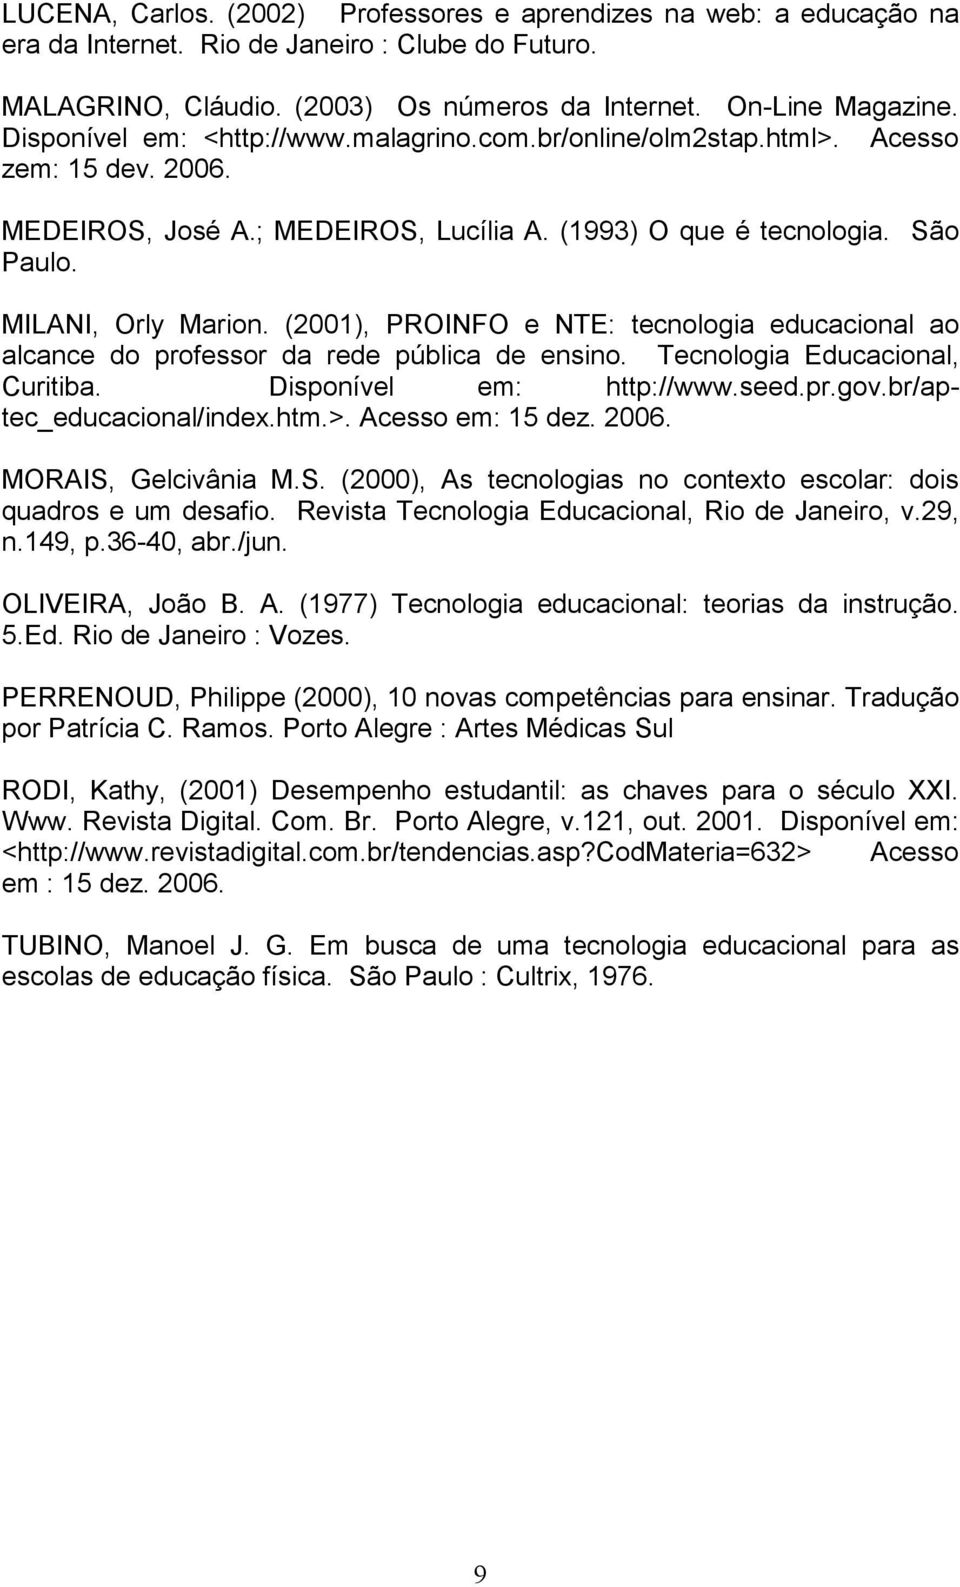 (2001), PROINFO e NTE: tecnologia educacional ao alcance do professor da rede pública de ensino. Tecnologia Educacional, Curitiba. Disponível em: http://www.seed.pr.gov.br/aptec_educacional/index.htm.